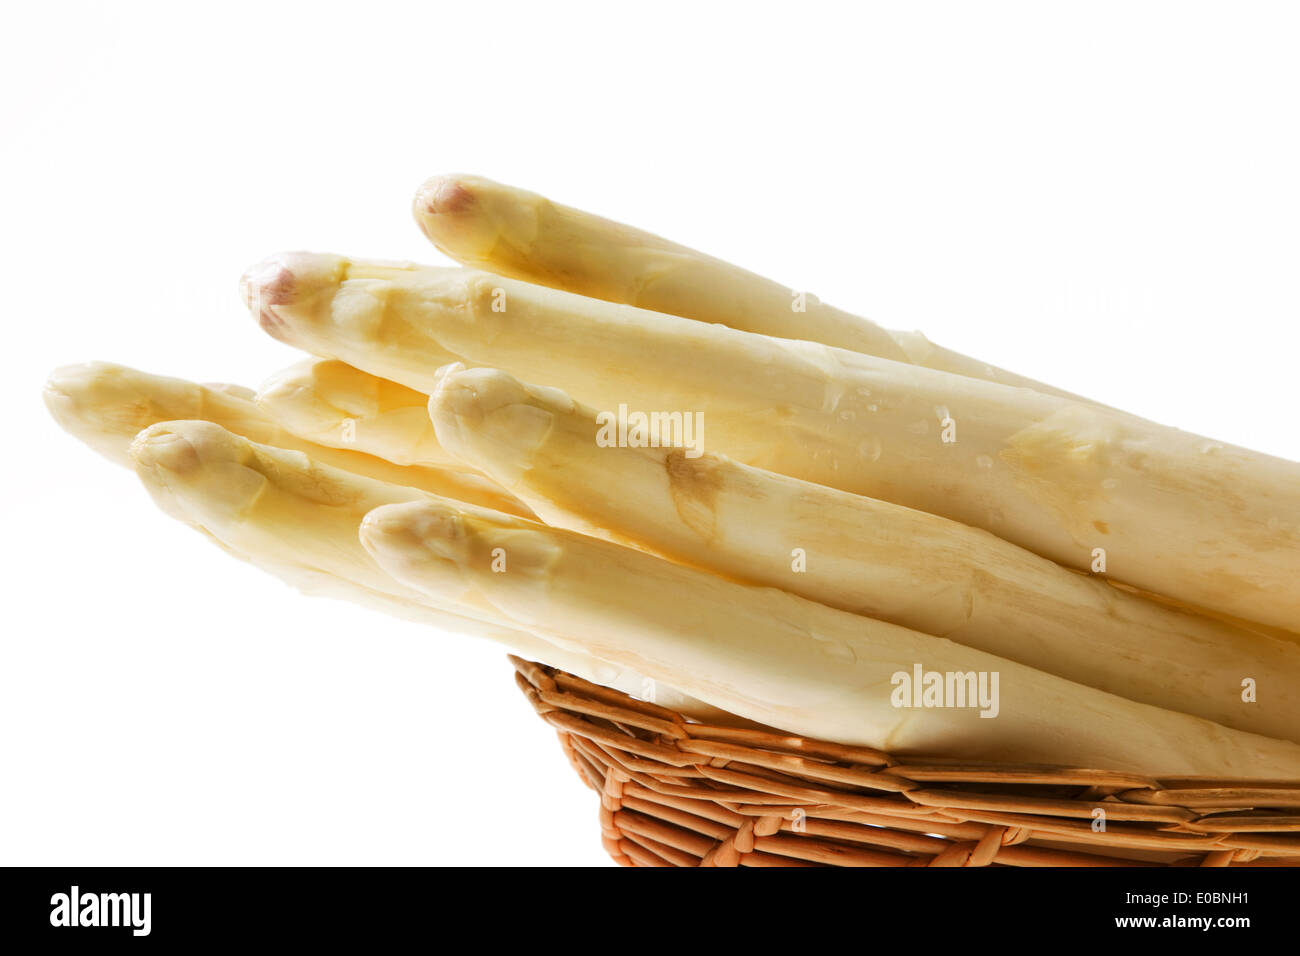 Asparagi blanc polonais dans le temps d'asperges Banque D'Images